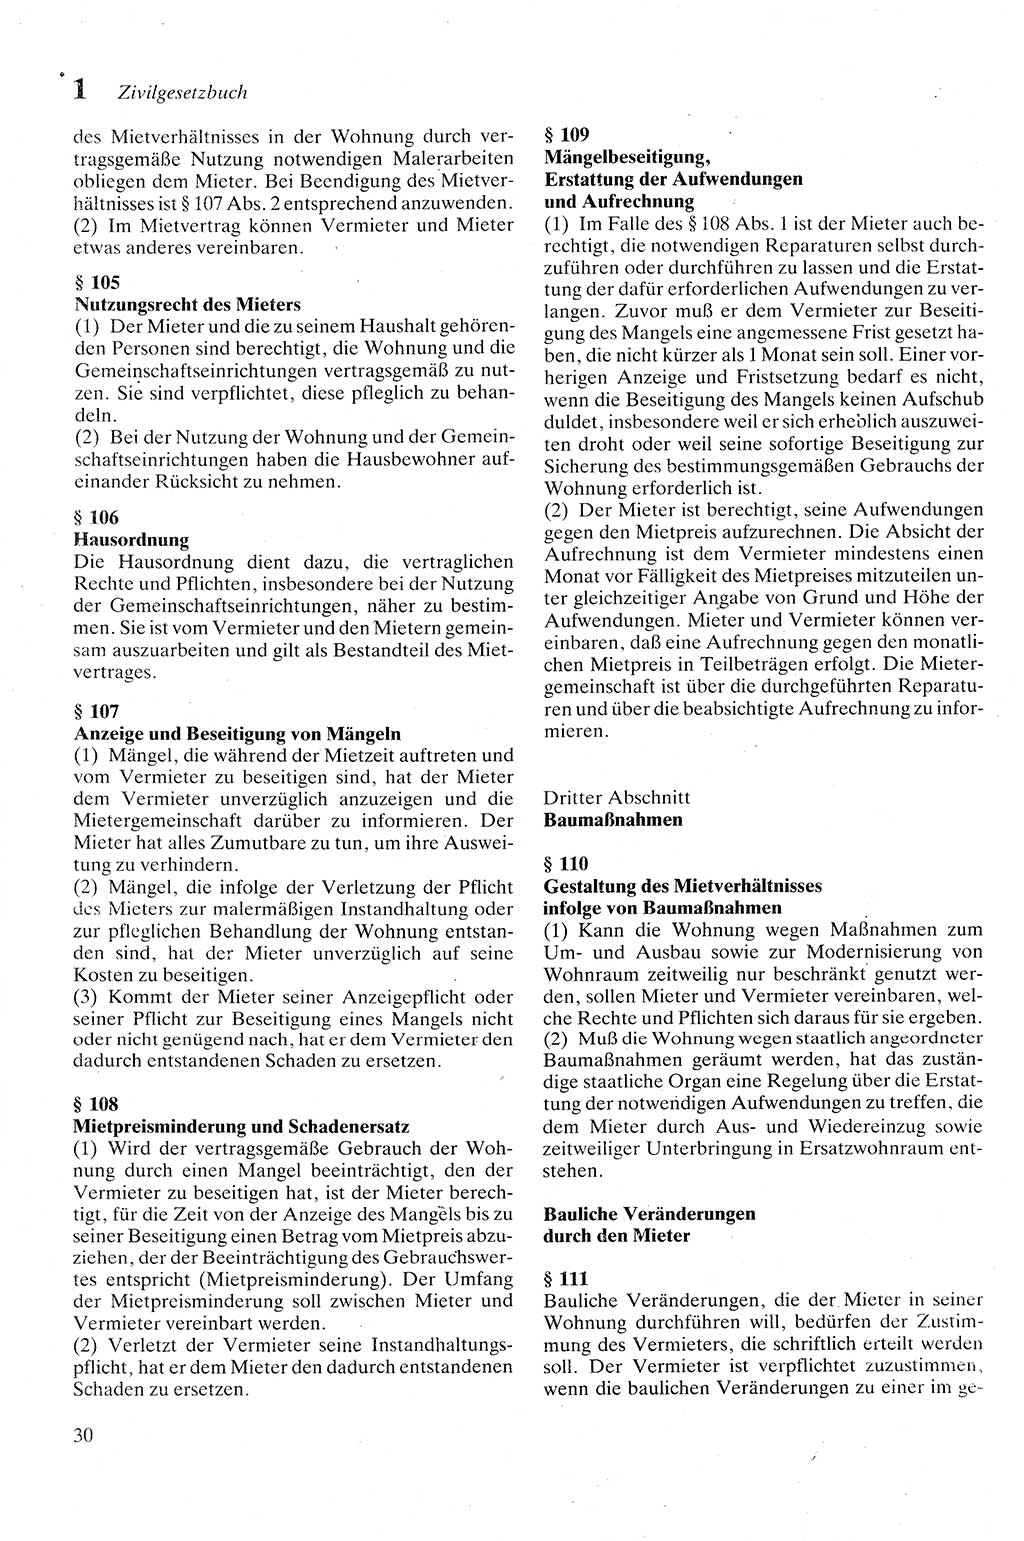 Zivilgesetzbuch (ZVG) sowie angrenzende Gesetze und Bestimmungen [Deutsche Demokratische Republik (DDR)] 1975, Seite 30 (ZGB Ges. Best. DDR 1975, S. 30)